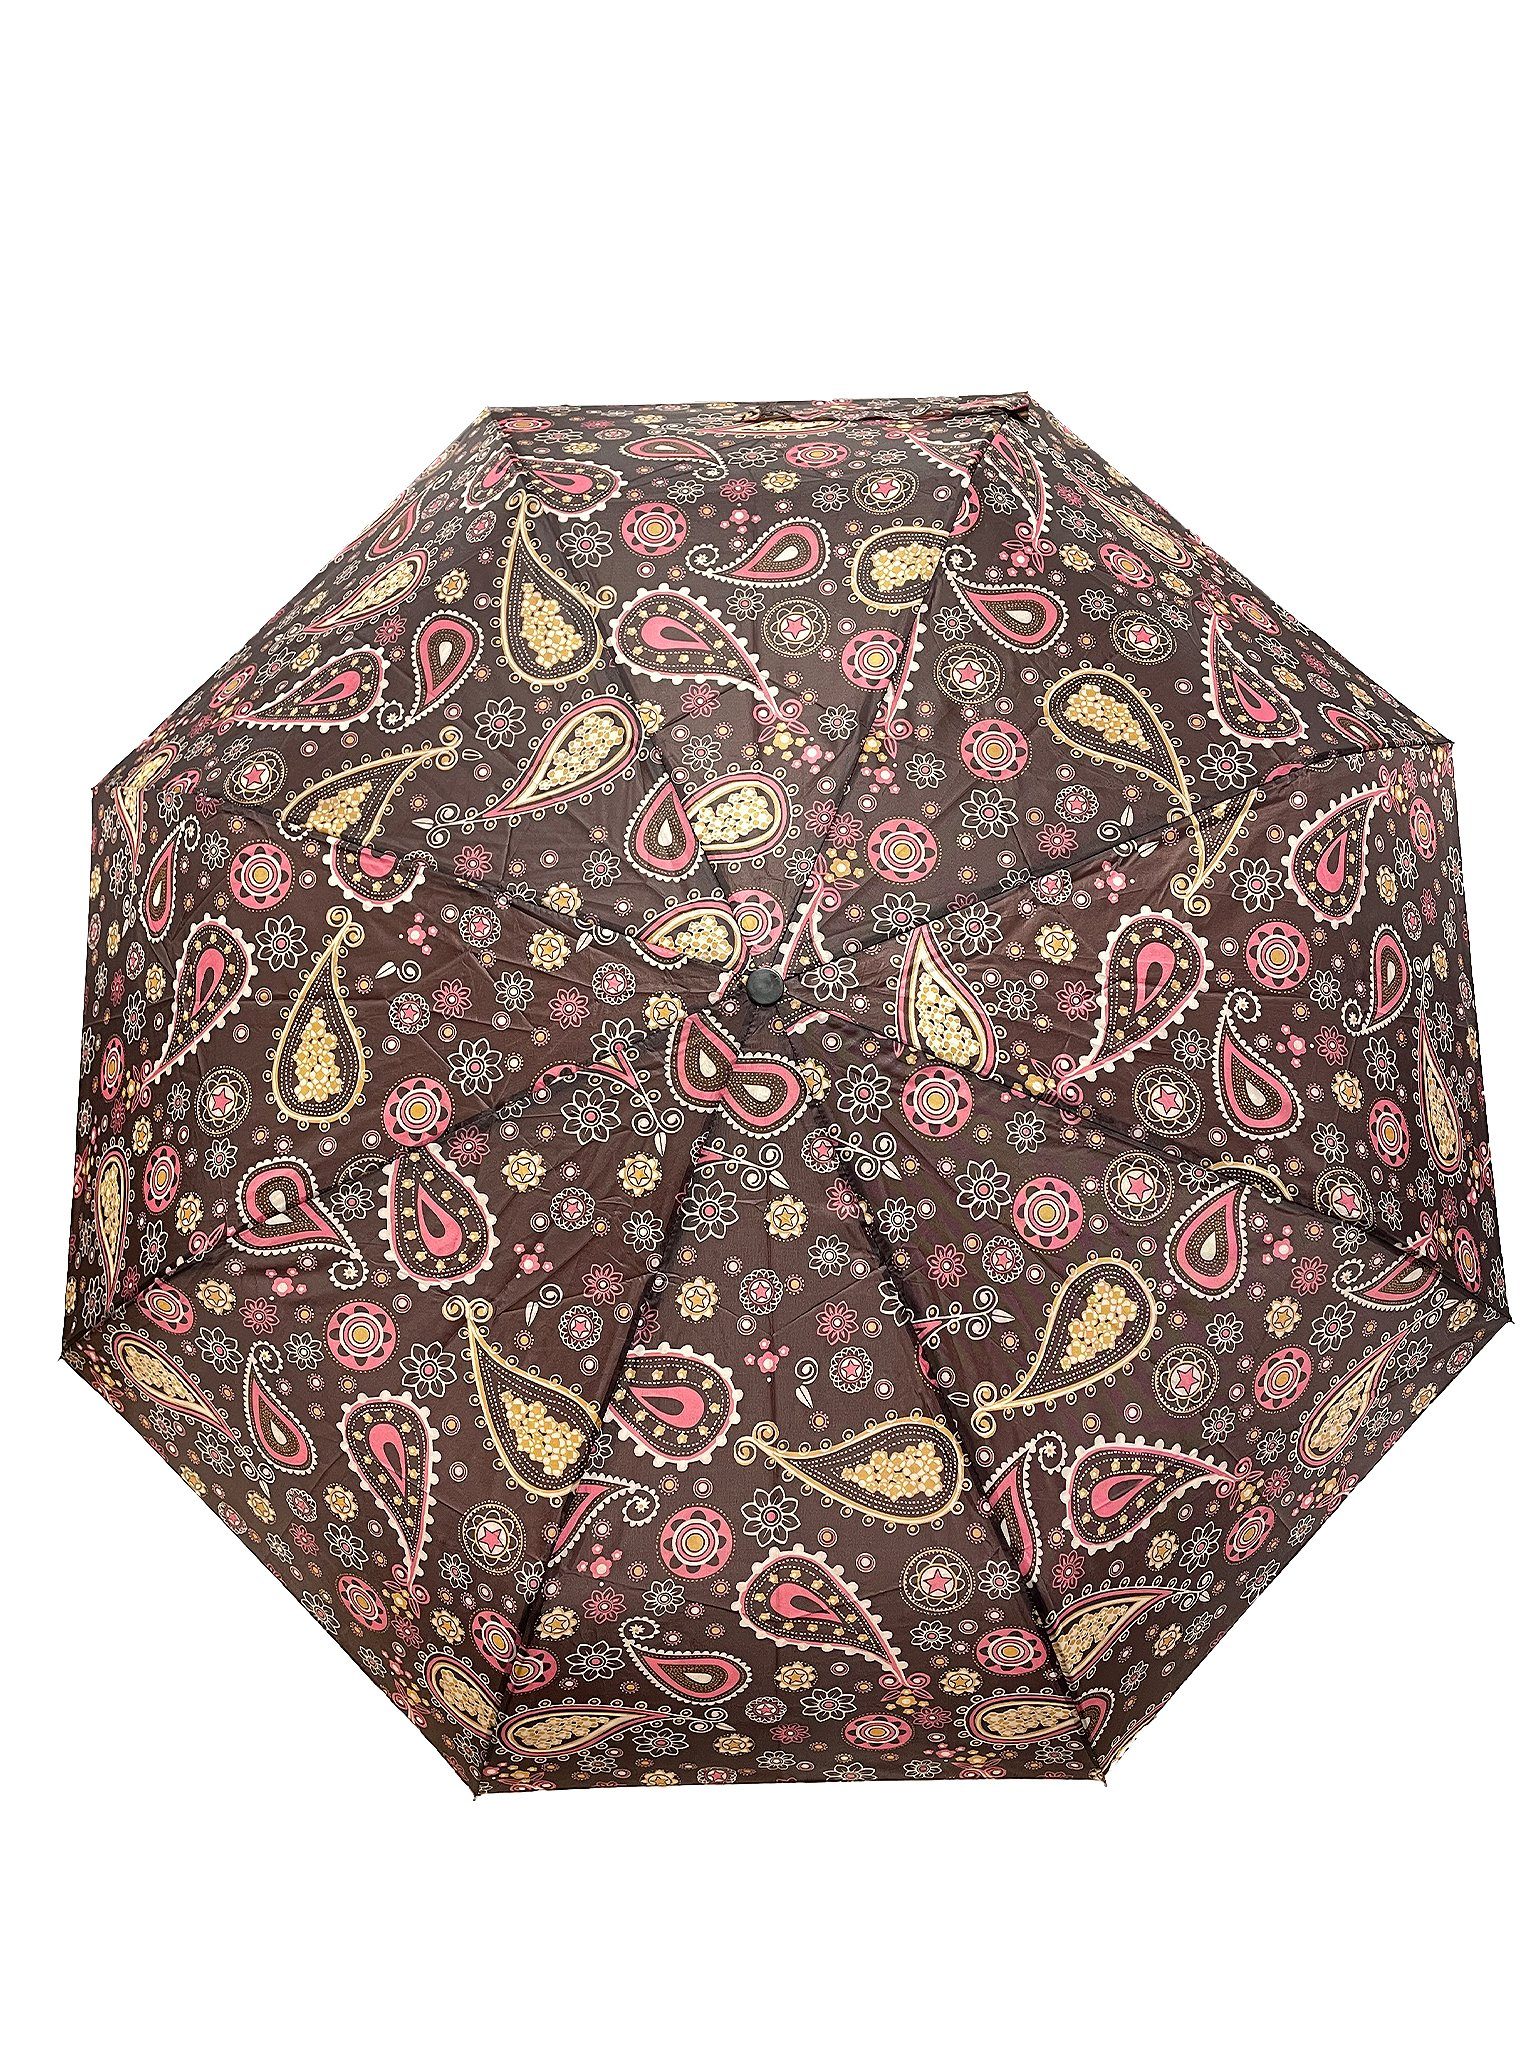 ANELY in Regenschirm Braun Kleiner Paris Gemustert Taschenschirm, Taschenregenschirm 6746